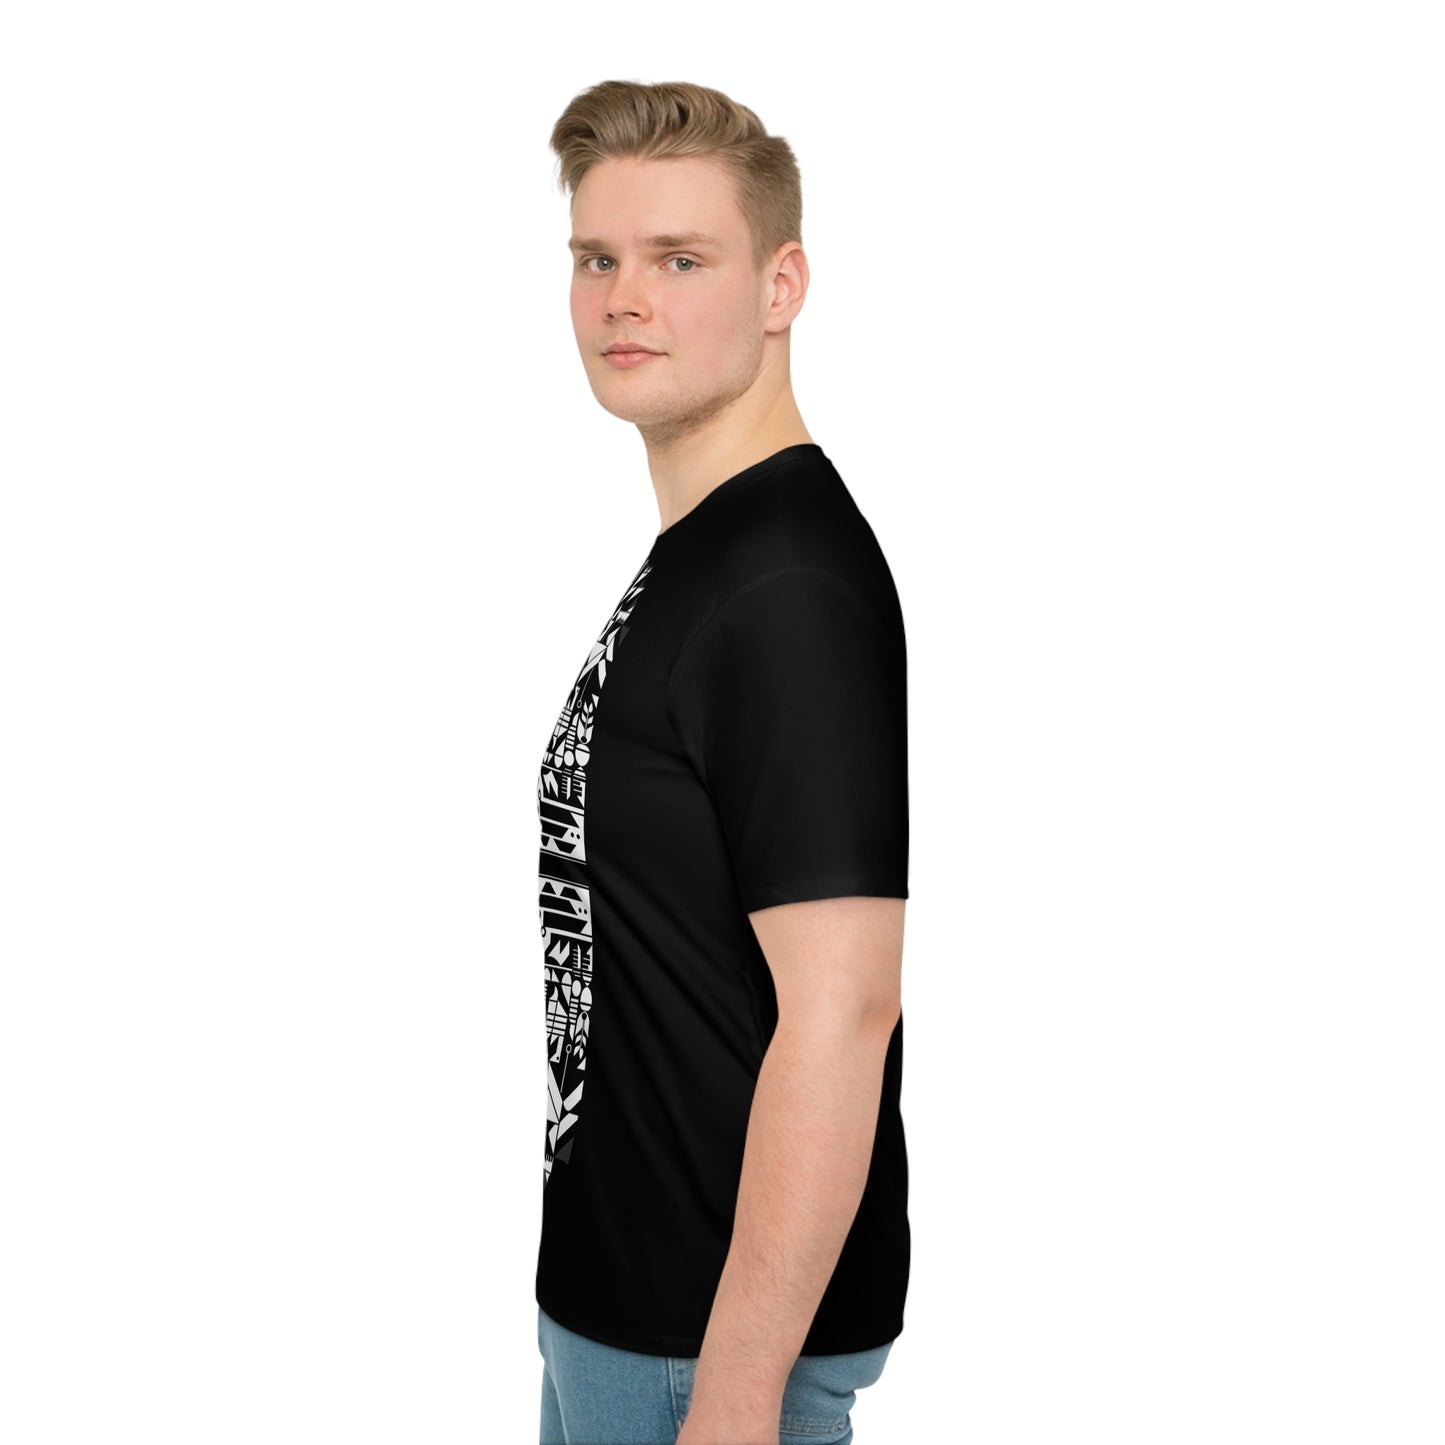 Warlideko Men's Black T-shirt